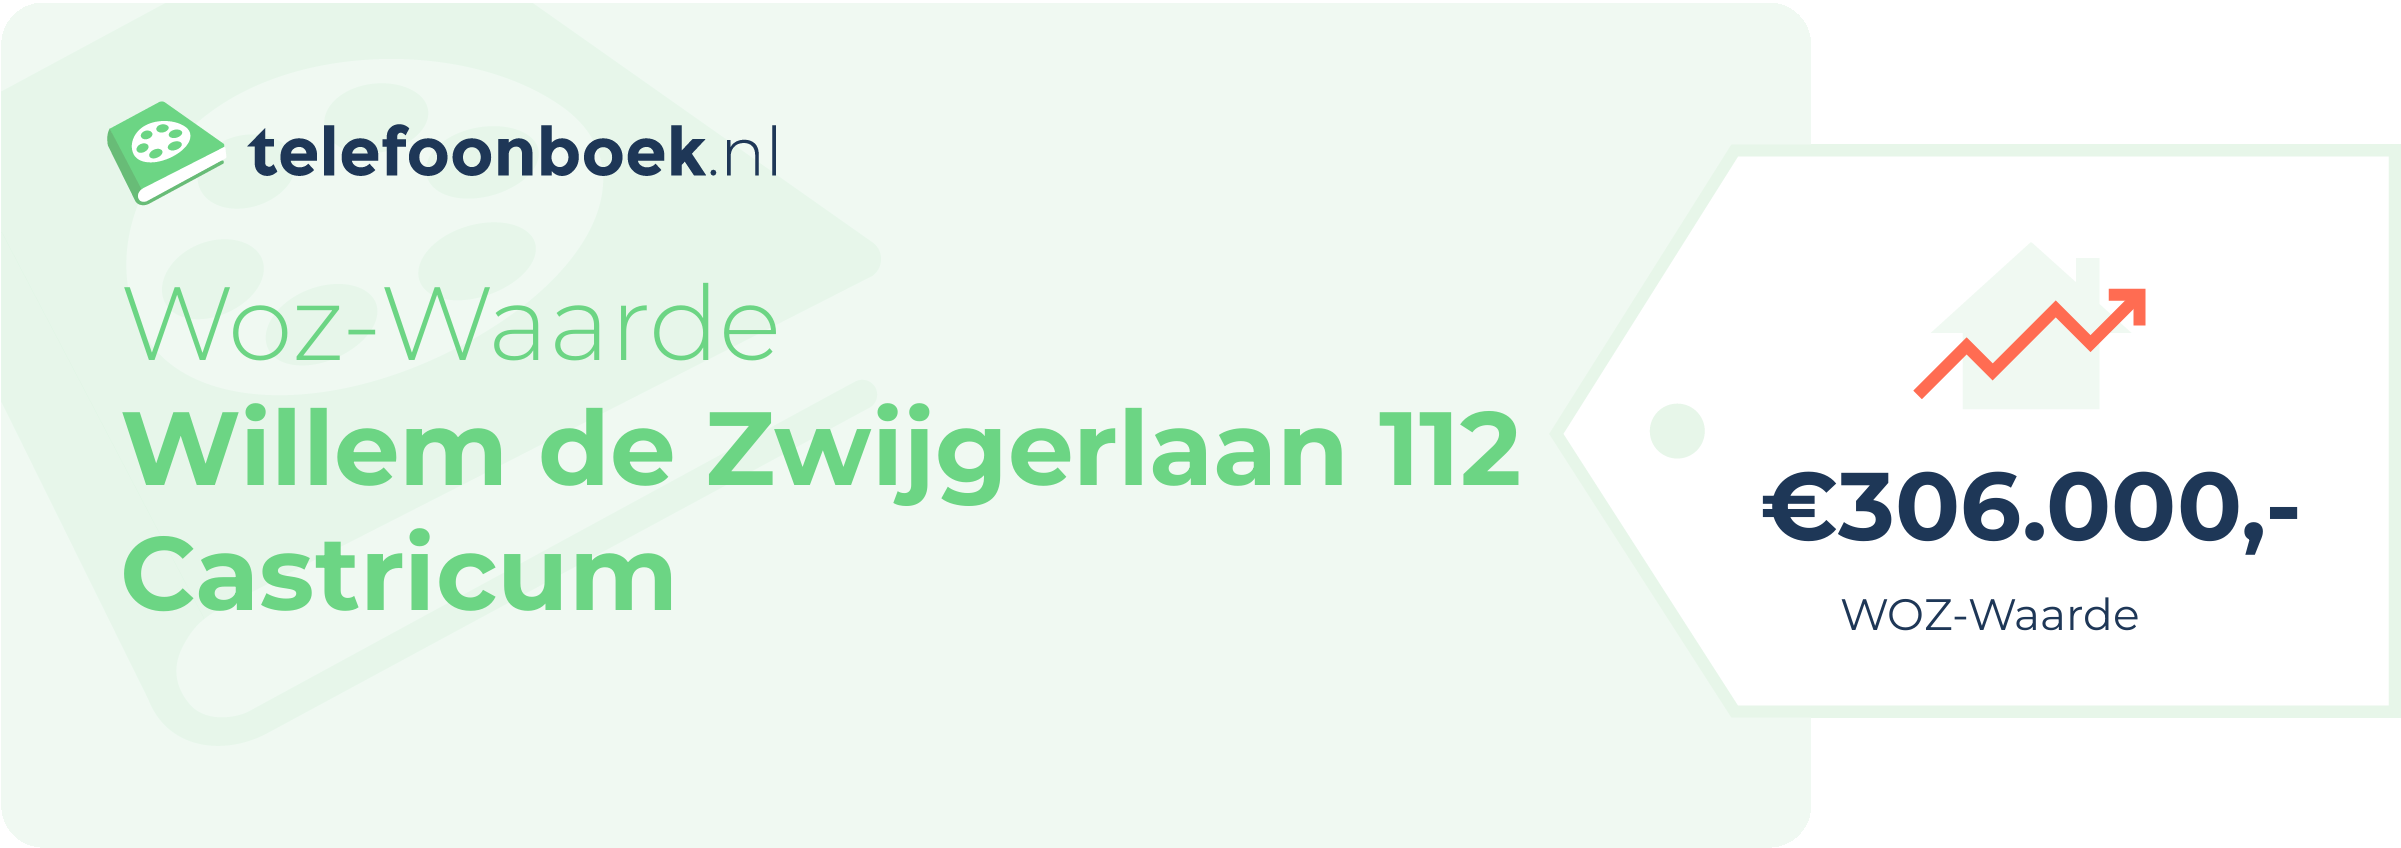 WOZ-waarde Willem De Zwijgerlaan 112 Castricum